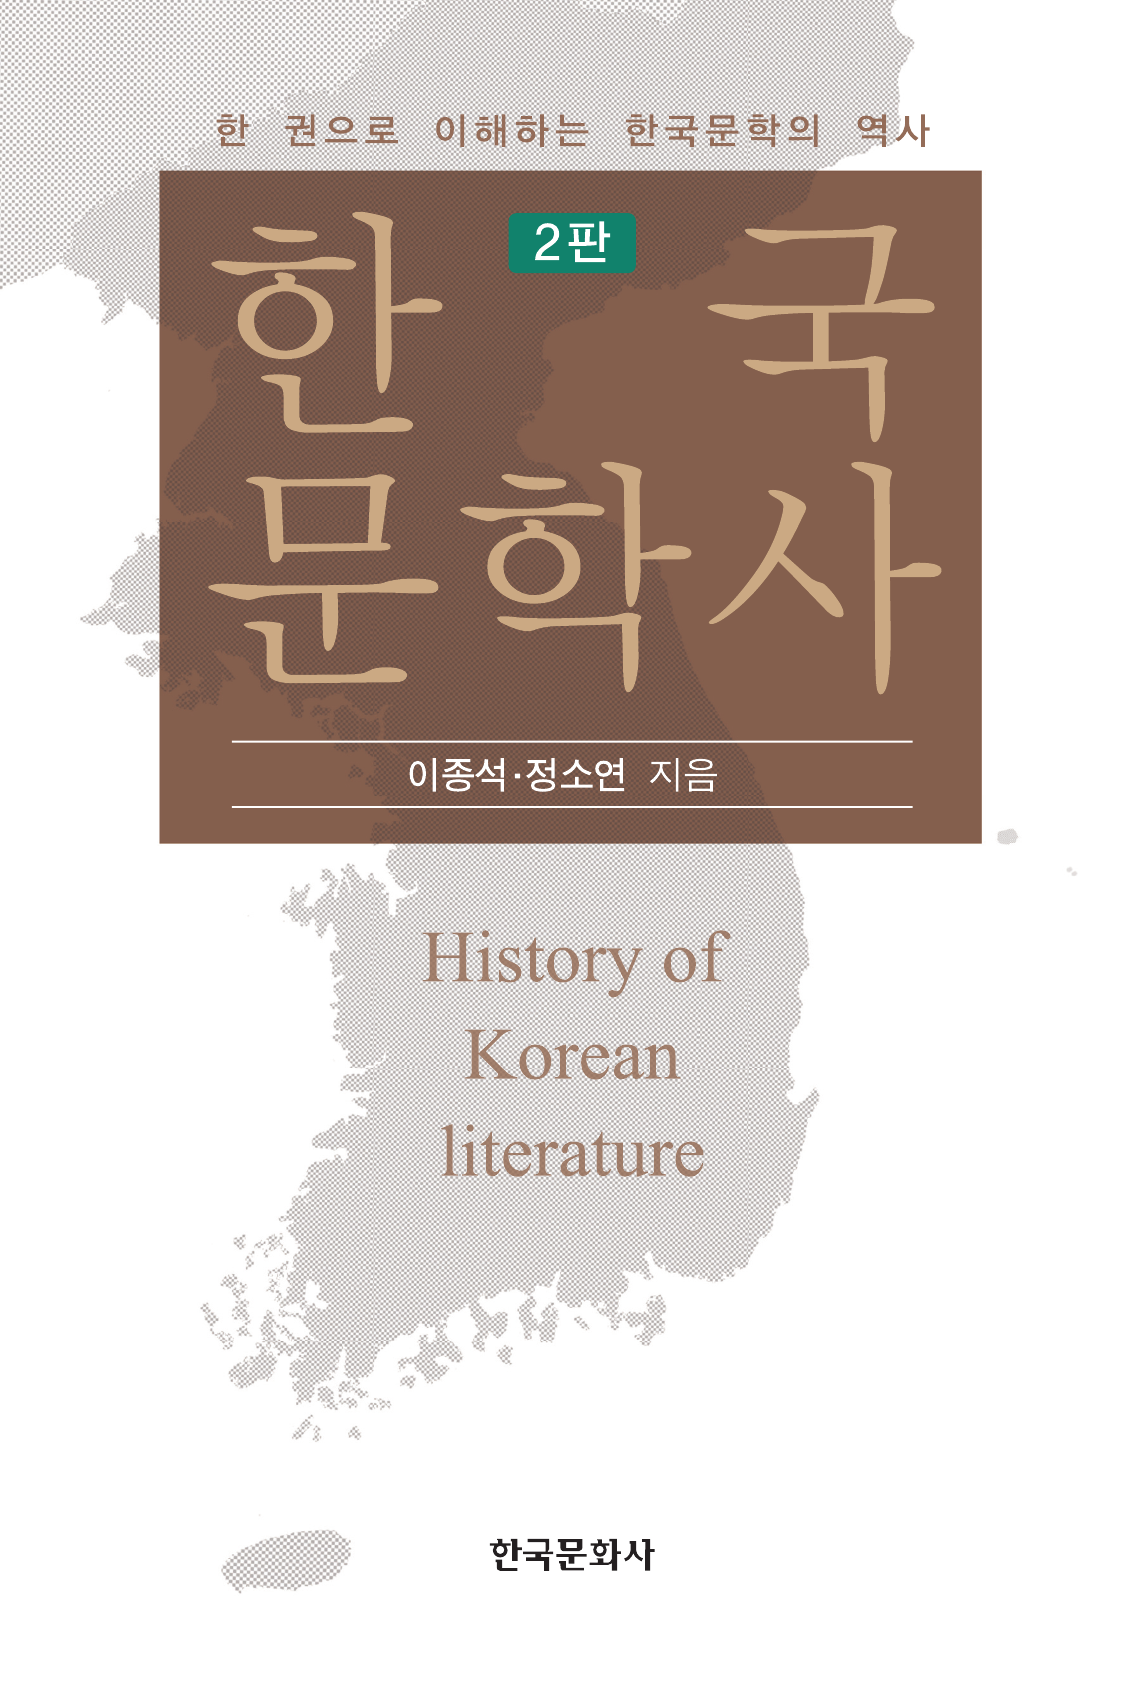 한국문학사 (한 권으로 이해하는 한국문학의 역사) 2판